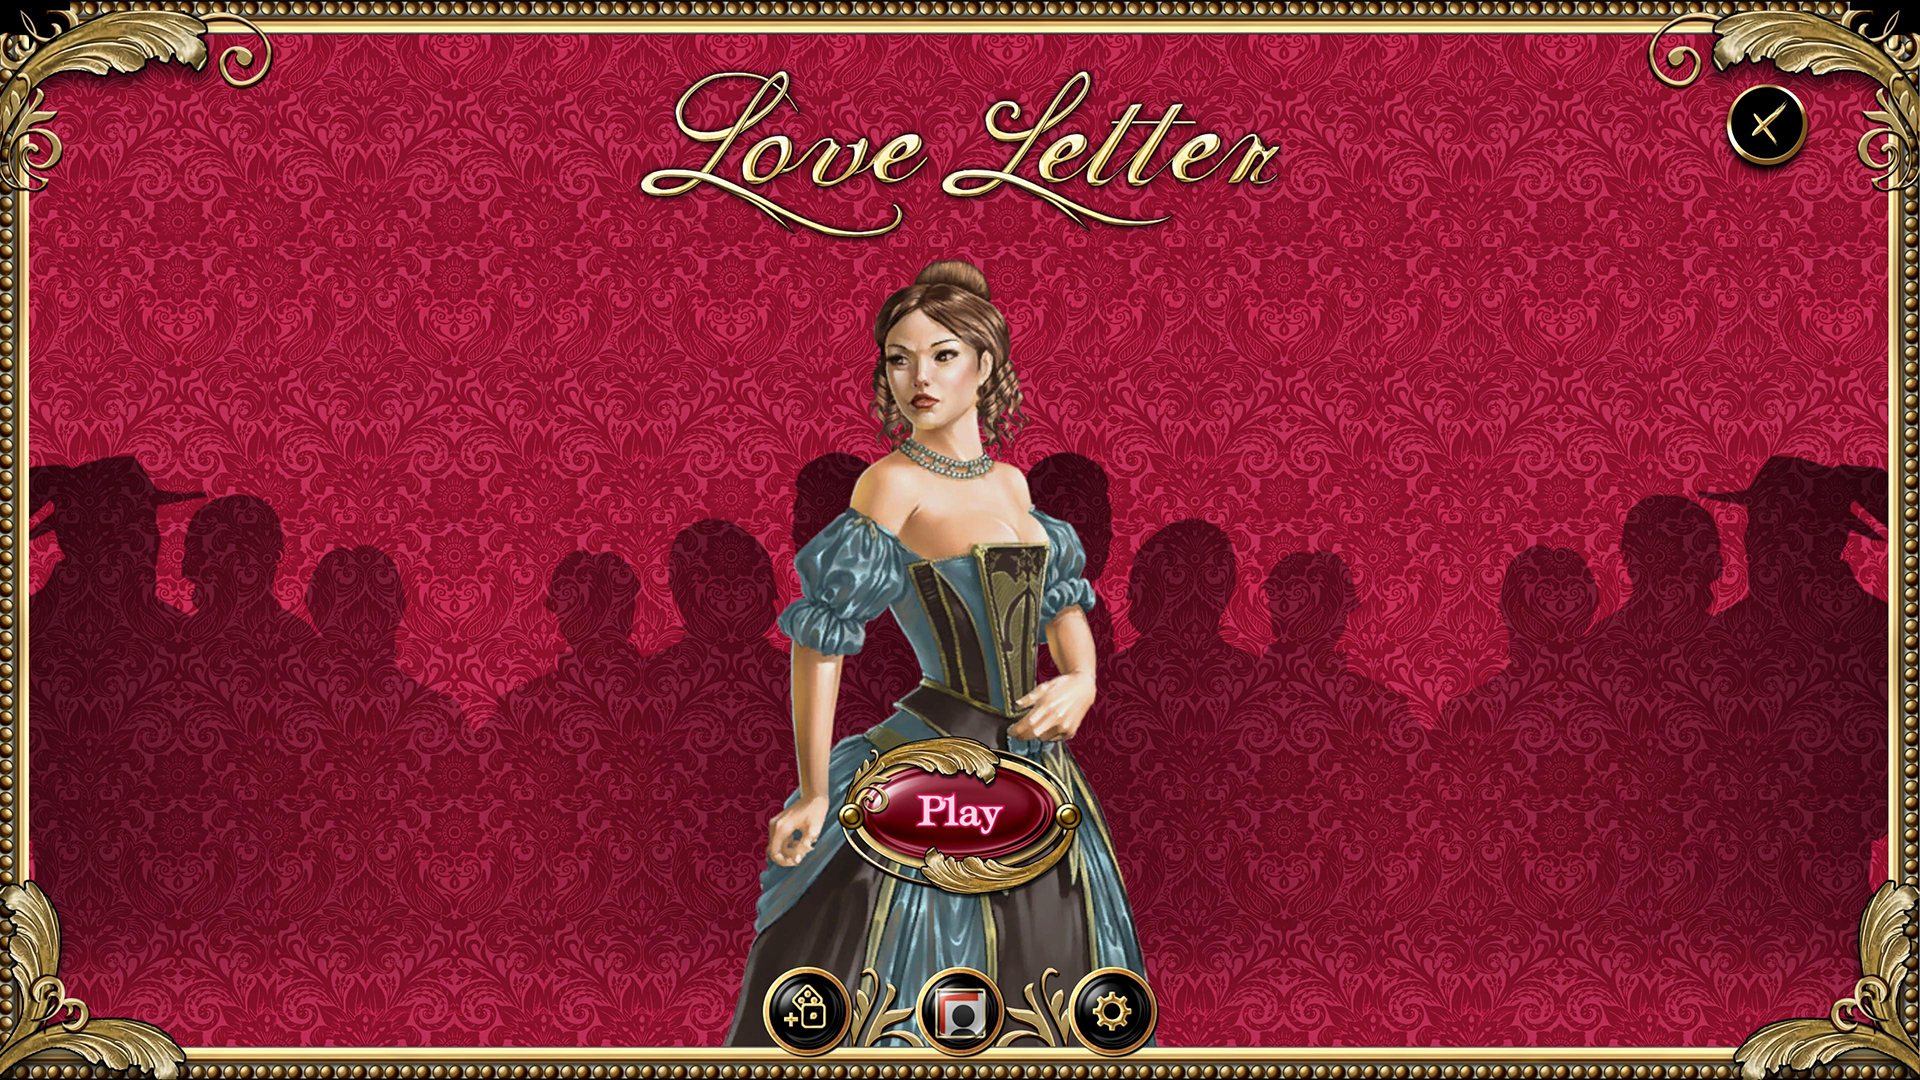 Love Letter Steam CD Key, 0.26 usd